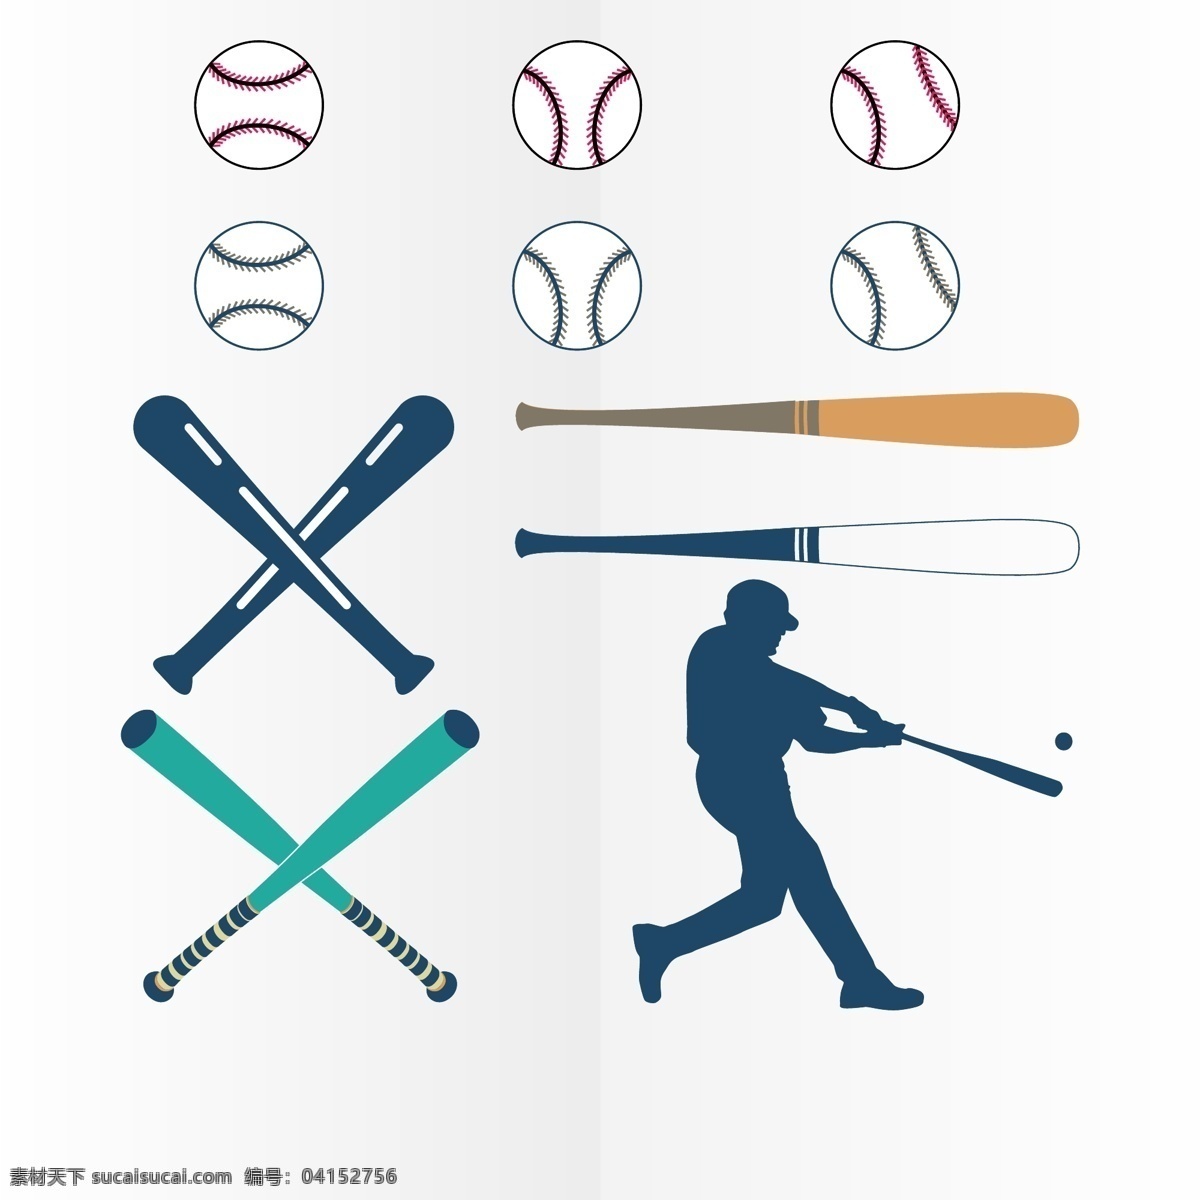 棒球运动 运动 体育运动 奥运会 比赛 运动海报 运动比赛海报 运动员 户外运动 室内运动 运动俱乐部 卡通设计